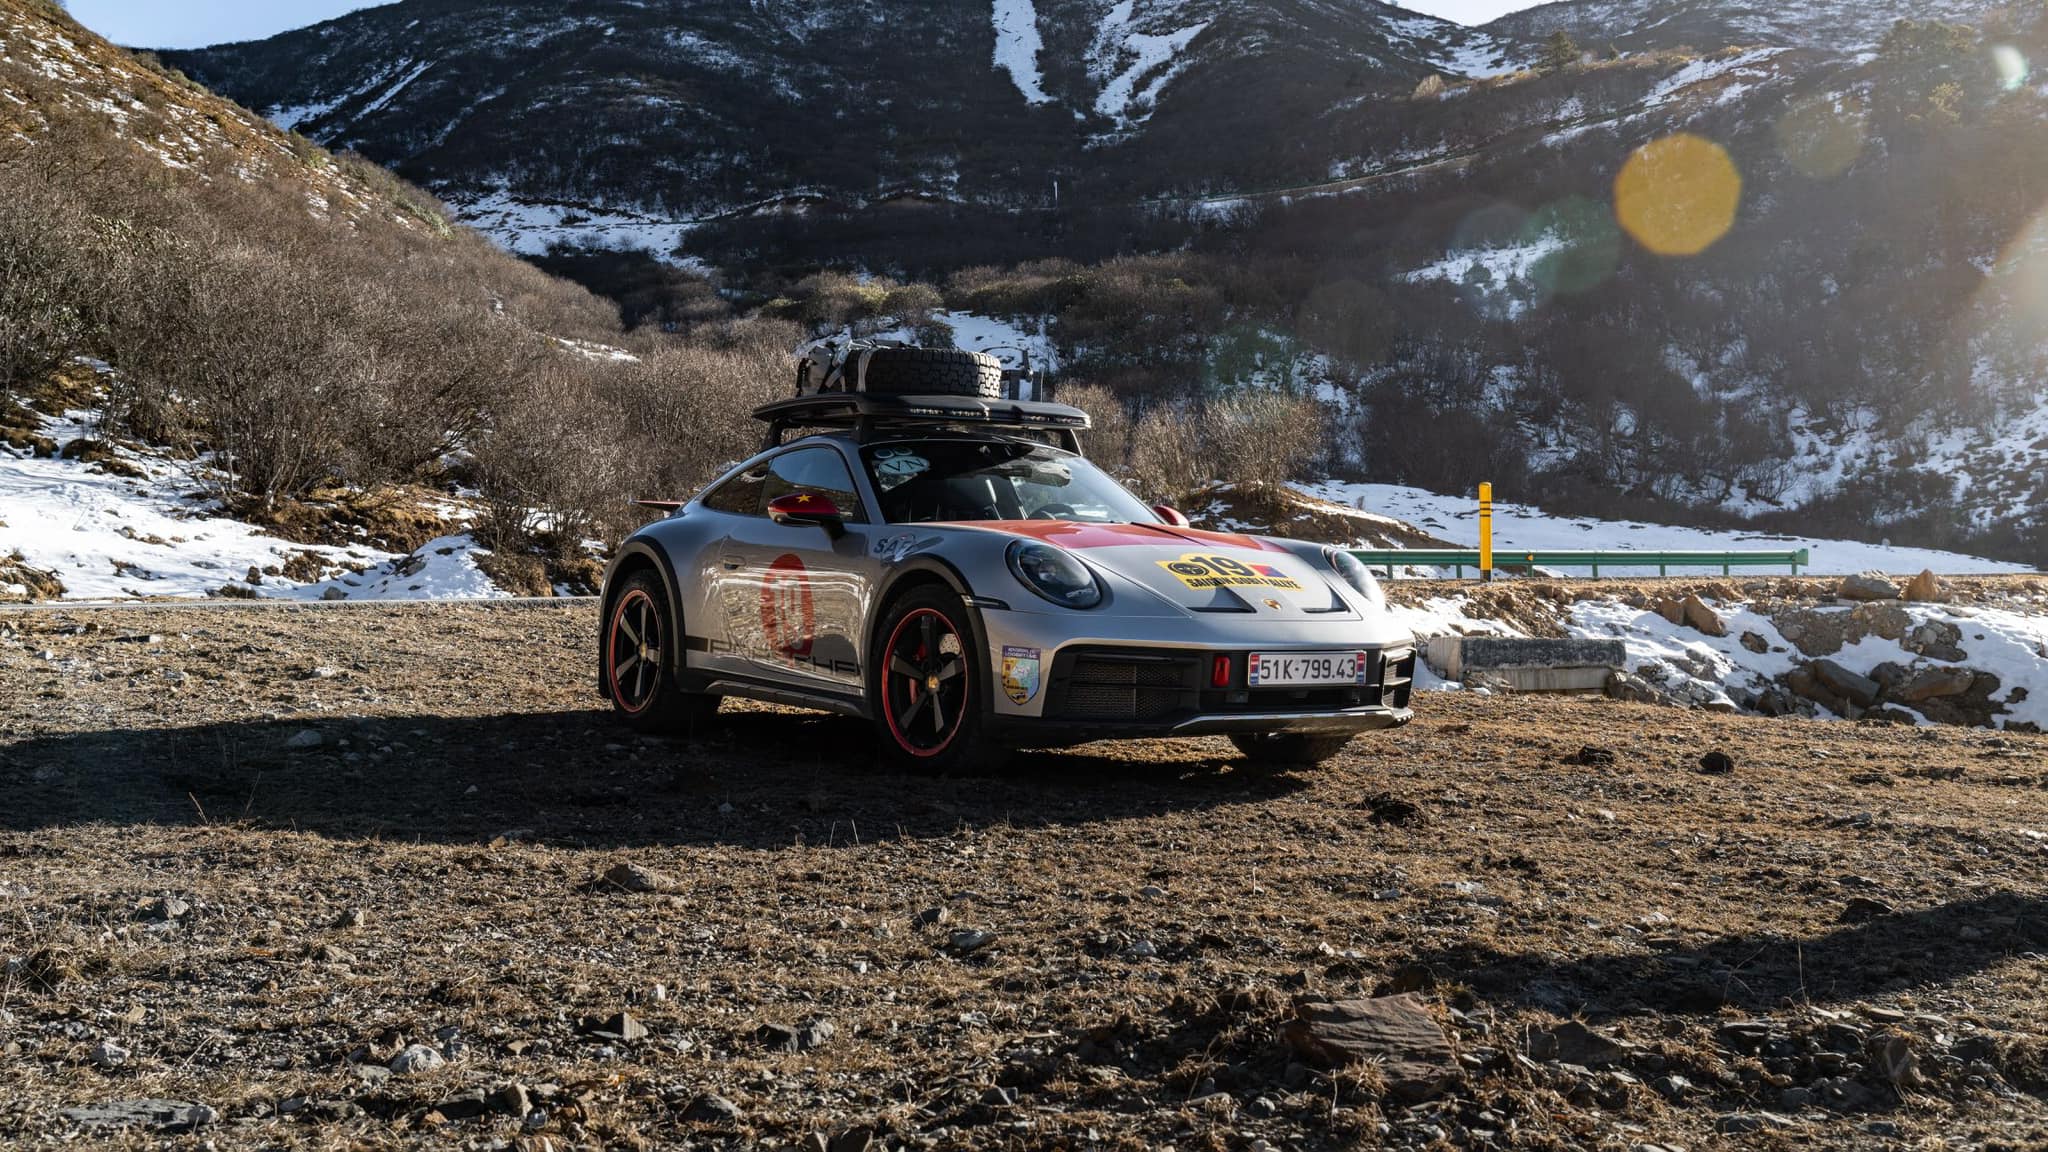 Chủ xe Porsche 911 Dakar: Từ bức ảnh trên Facebook tới quyết định mua xe và chuyến phượt hơn 33.000km từ Việt Nam tới Mông Cổ - Ảnh 7.